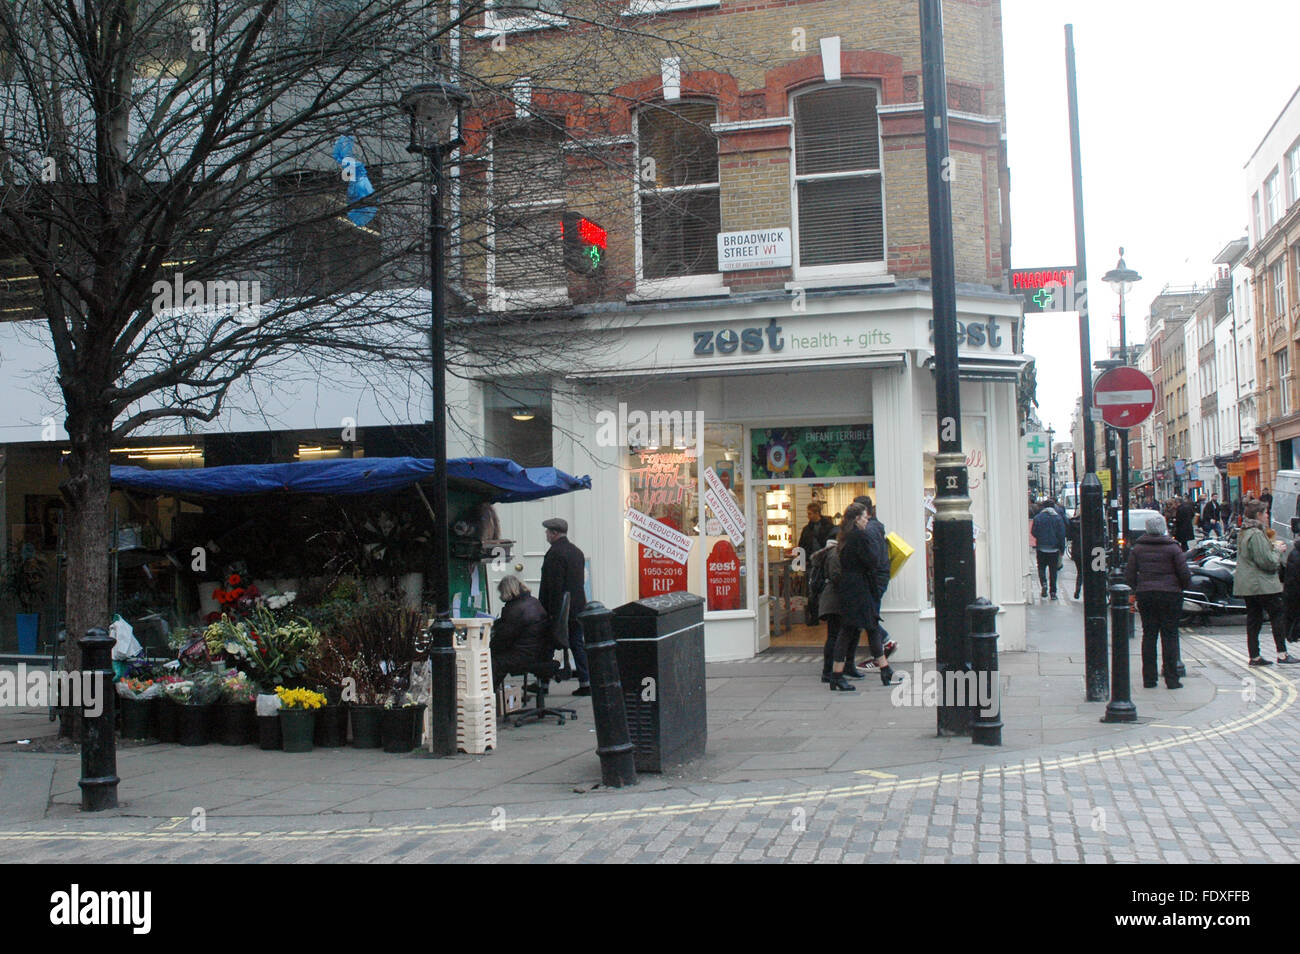 London, UK, 1 Februar 216 Zest Apotheke liegt bei 18 Broadwick Street, Soho Herzstück Ecke Bewick Straße Markt, die Londoner Westend etablierte 1950 ist aufgrund der Redelopment Bereich zu schließen. Als Teil alten Soho der Untergang von vielen bedauert wird. Stockfoto